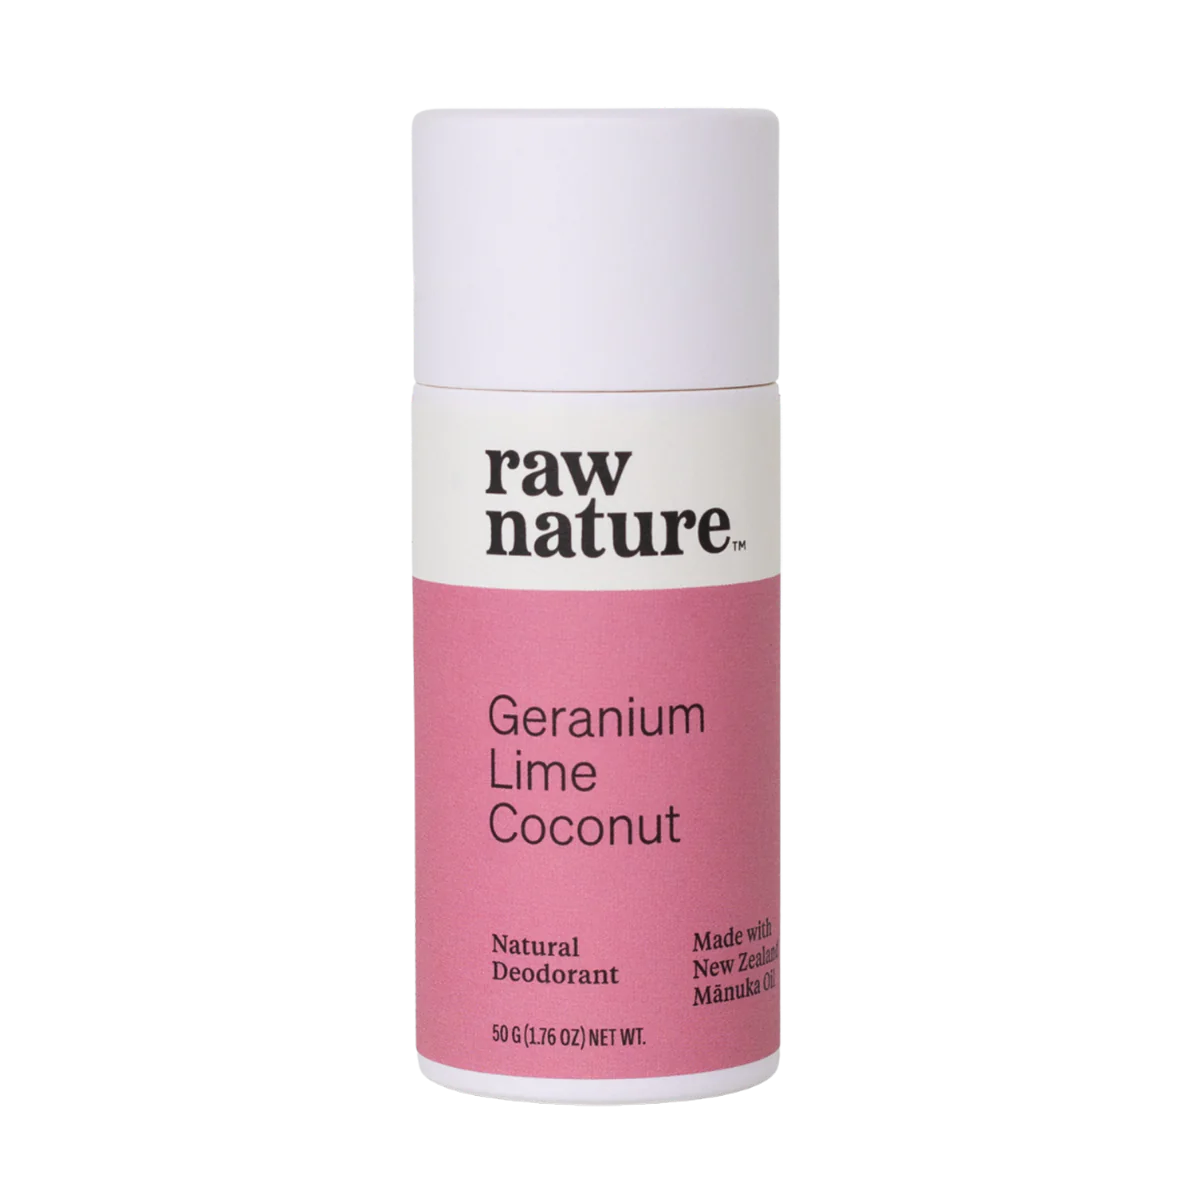 Raw Nature Deodorant Geranium Lime Coconut